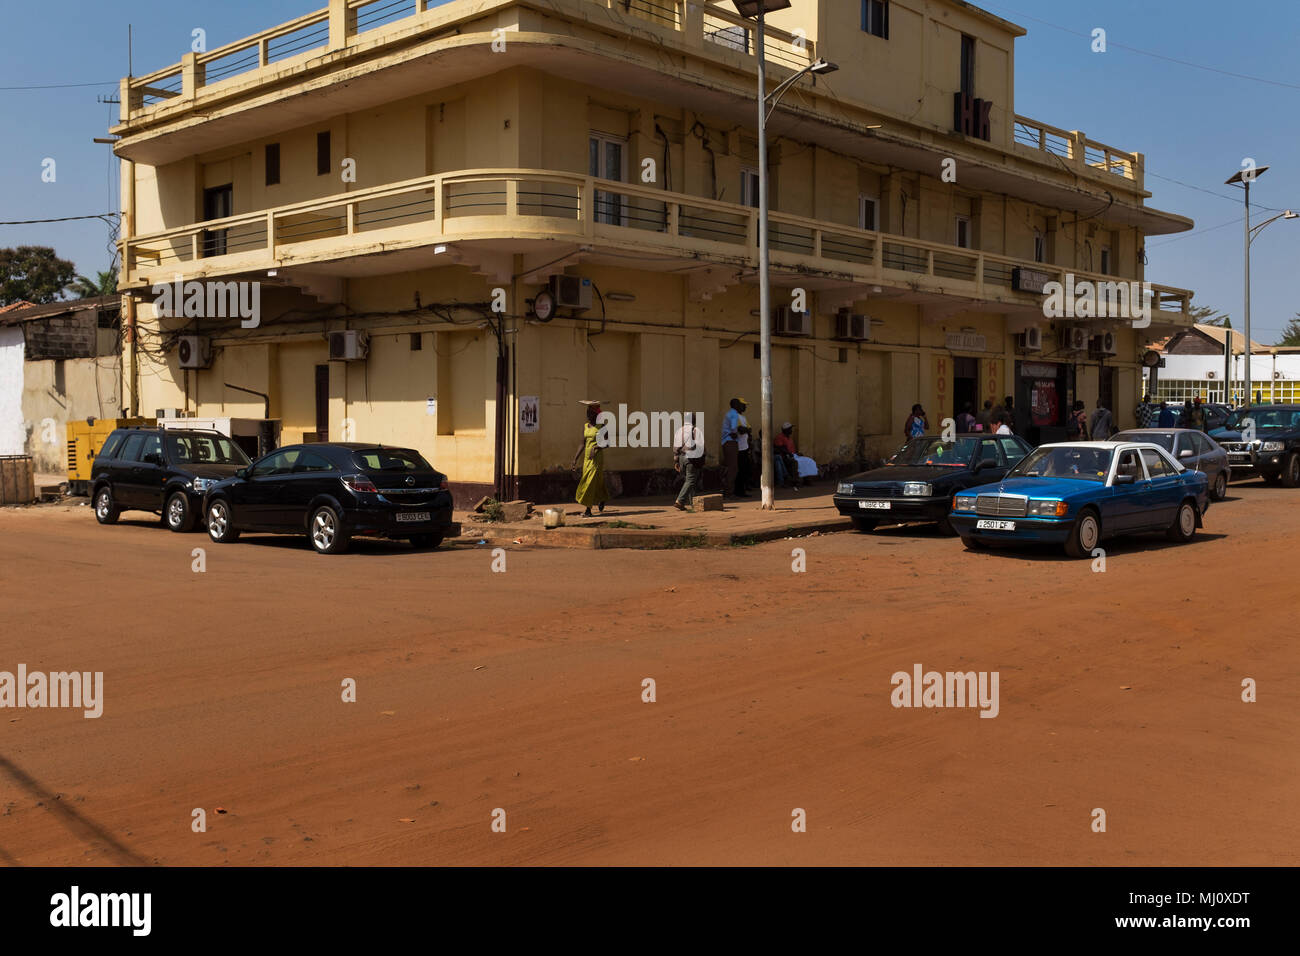 Bissau, Republik Guinea-Bissau - Januar 30, 2018: Stree Szene in der Stadt Bissau mit Passanten vor einem alten Hotel, in Guinea-Bissau Stockfoto